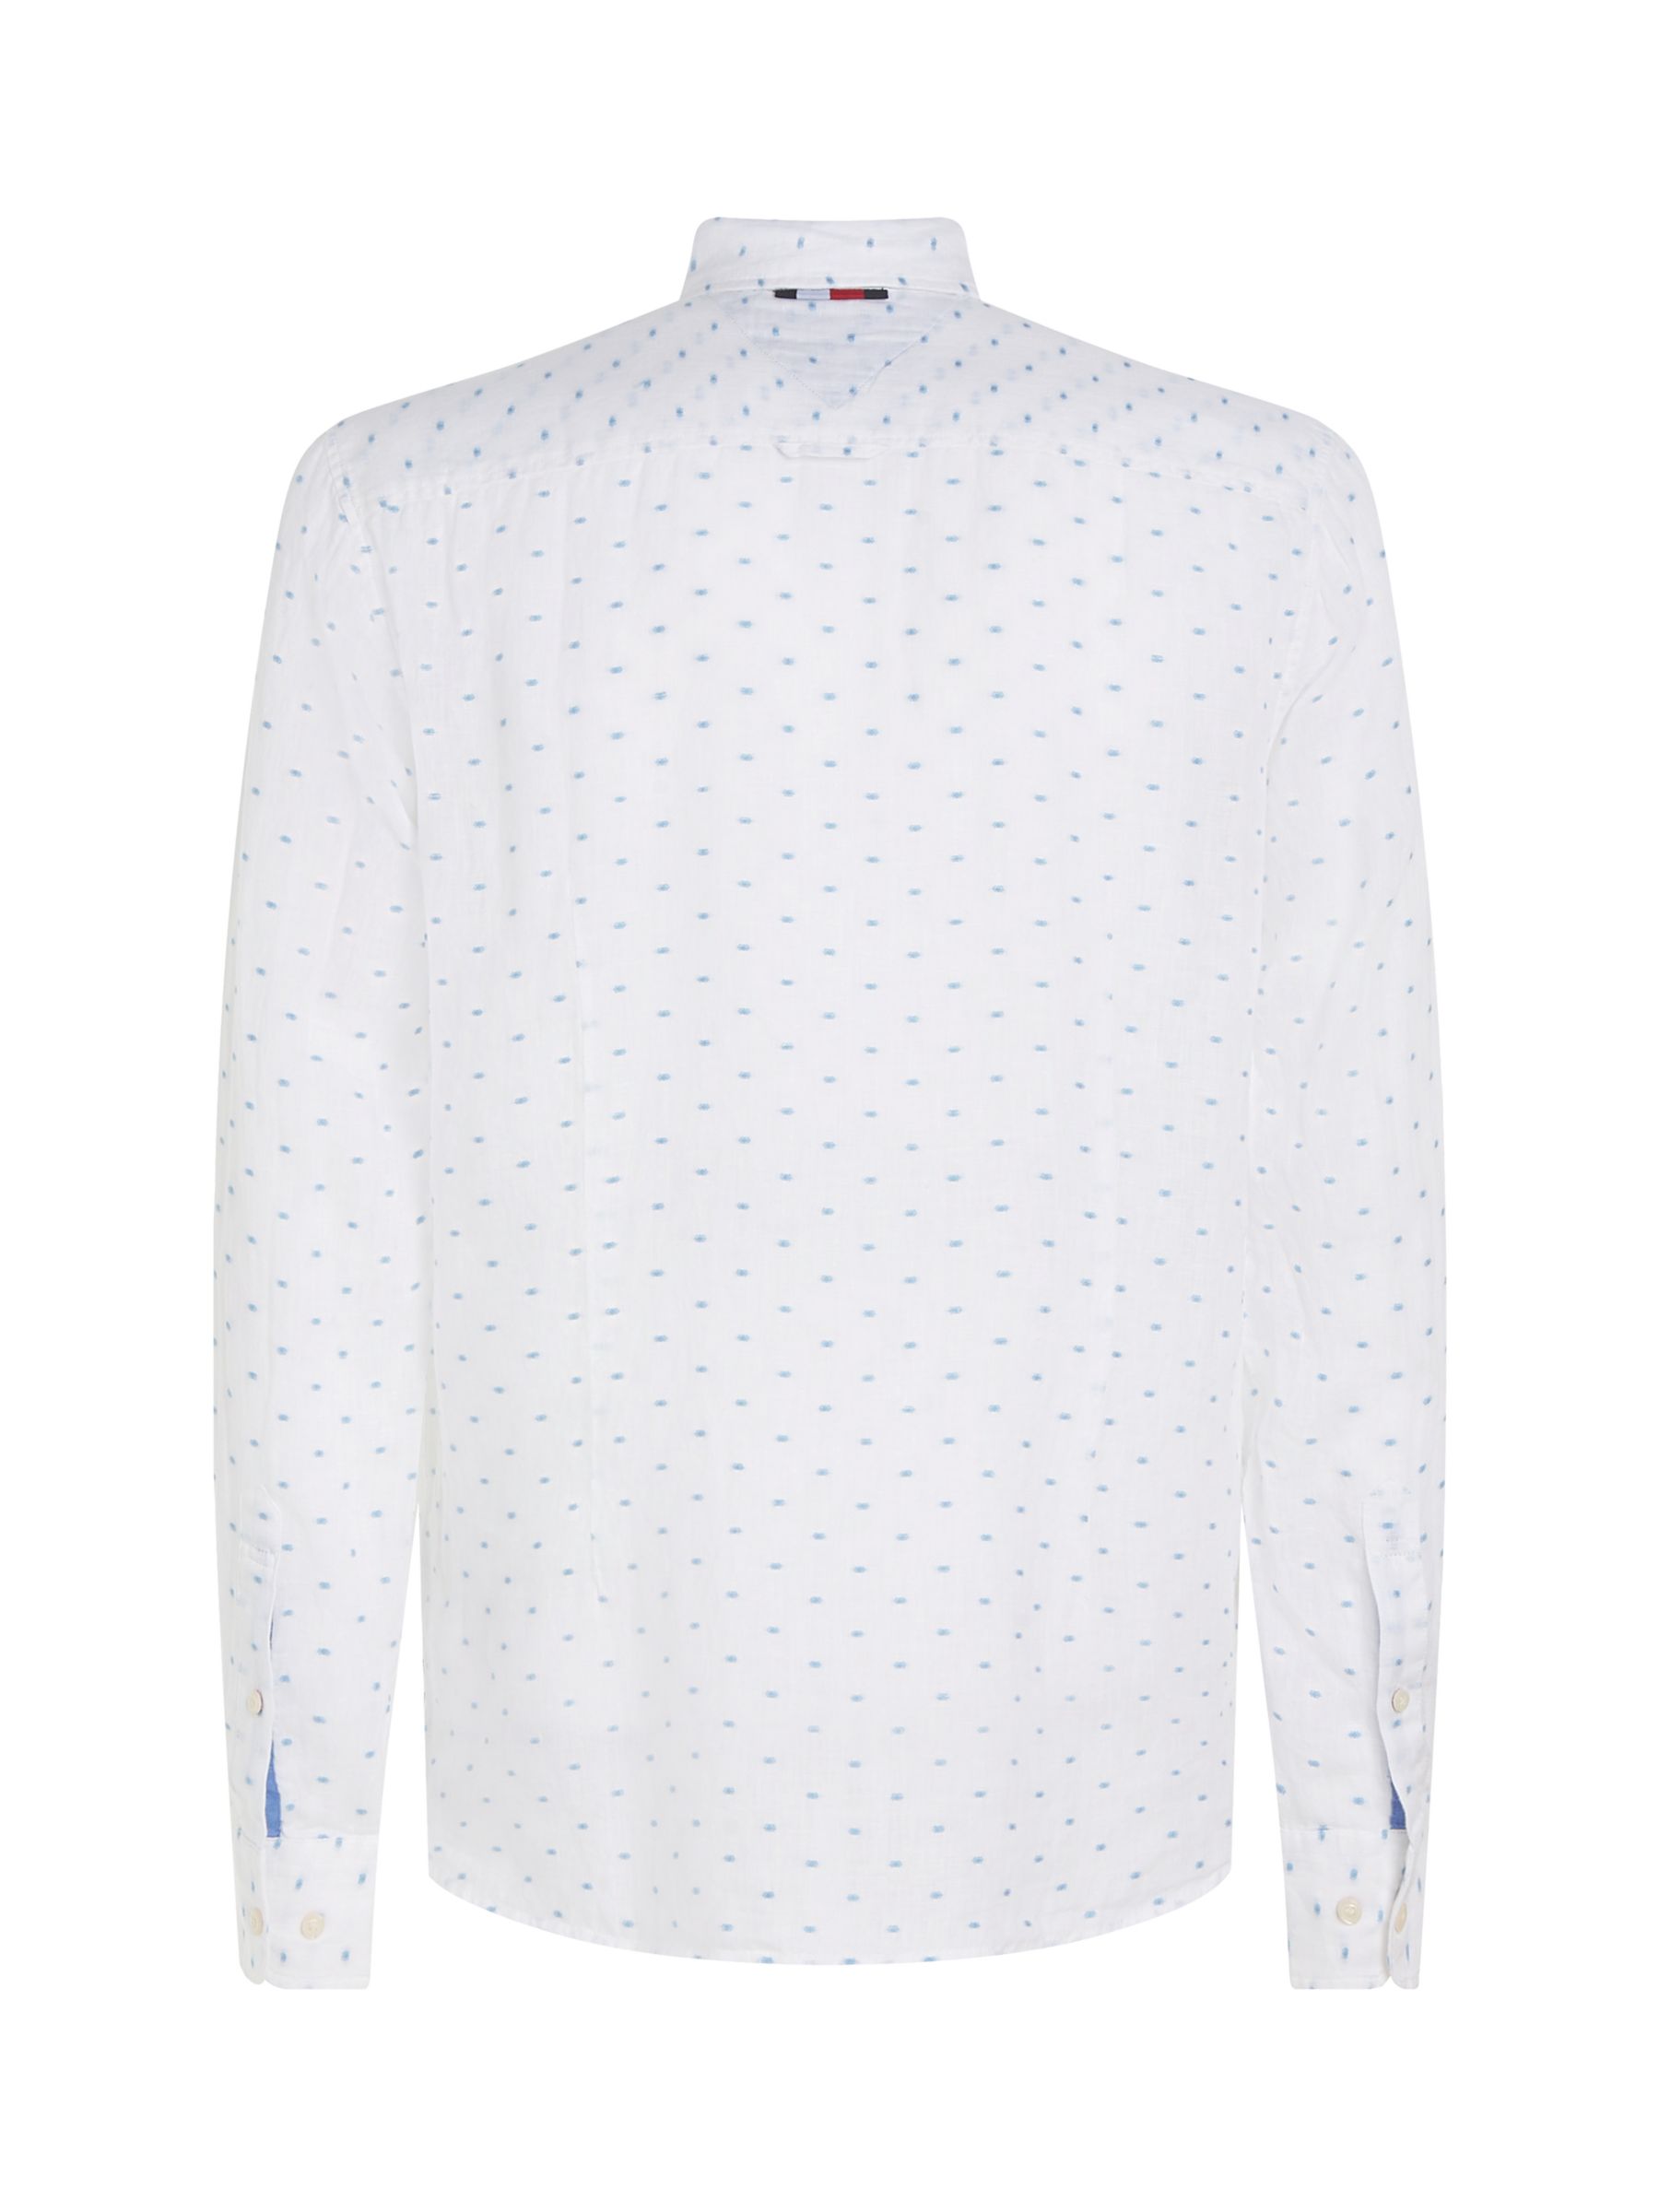 Tommy Hilfiger Linen Polka Dot Shirt, White, S